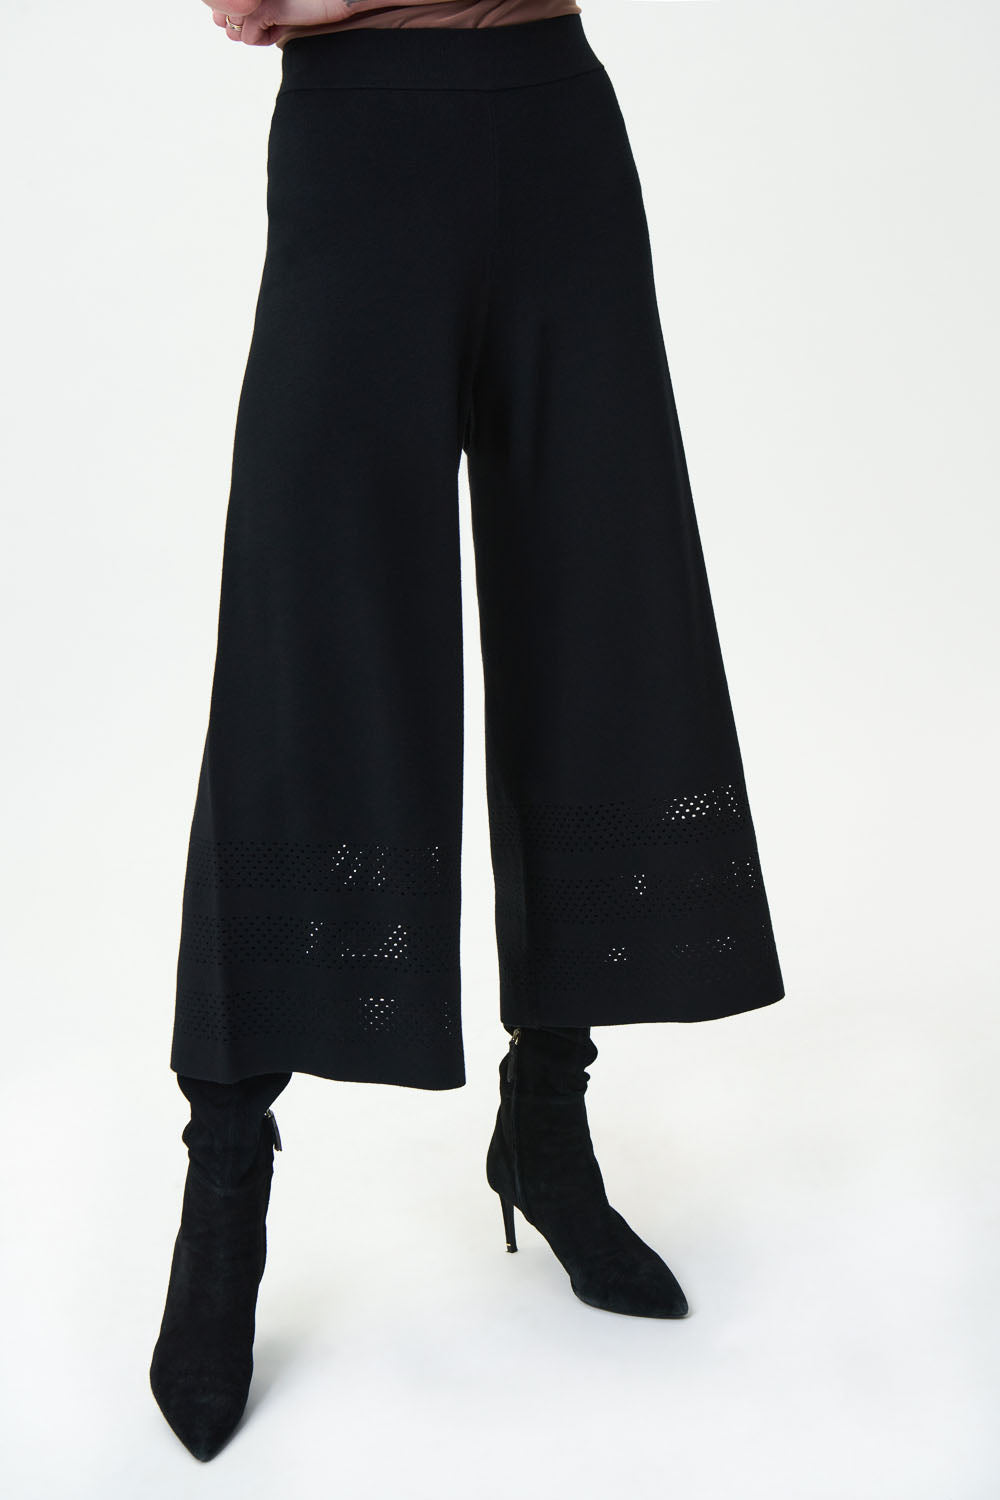 Joseph Ribkoff Black Wide Leg Chiffon Pants Style 223739 – Luxetire